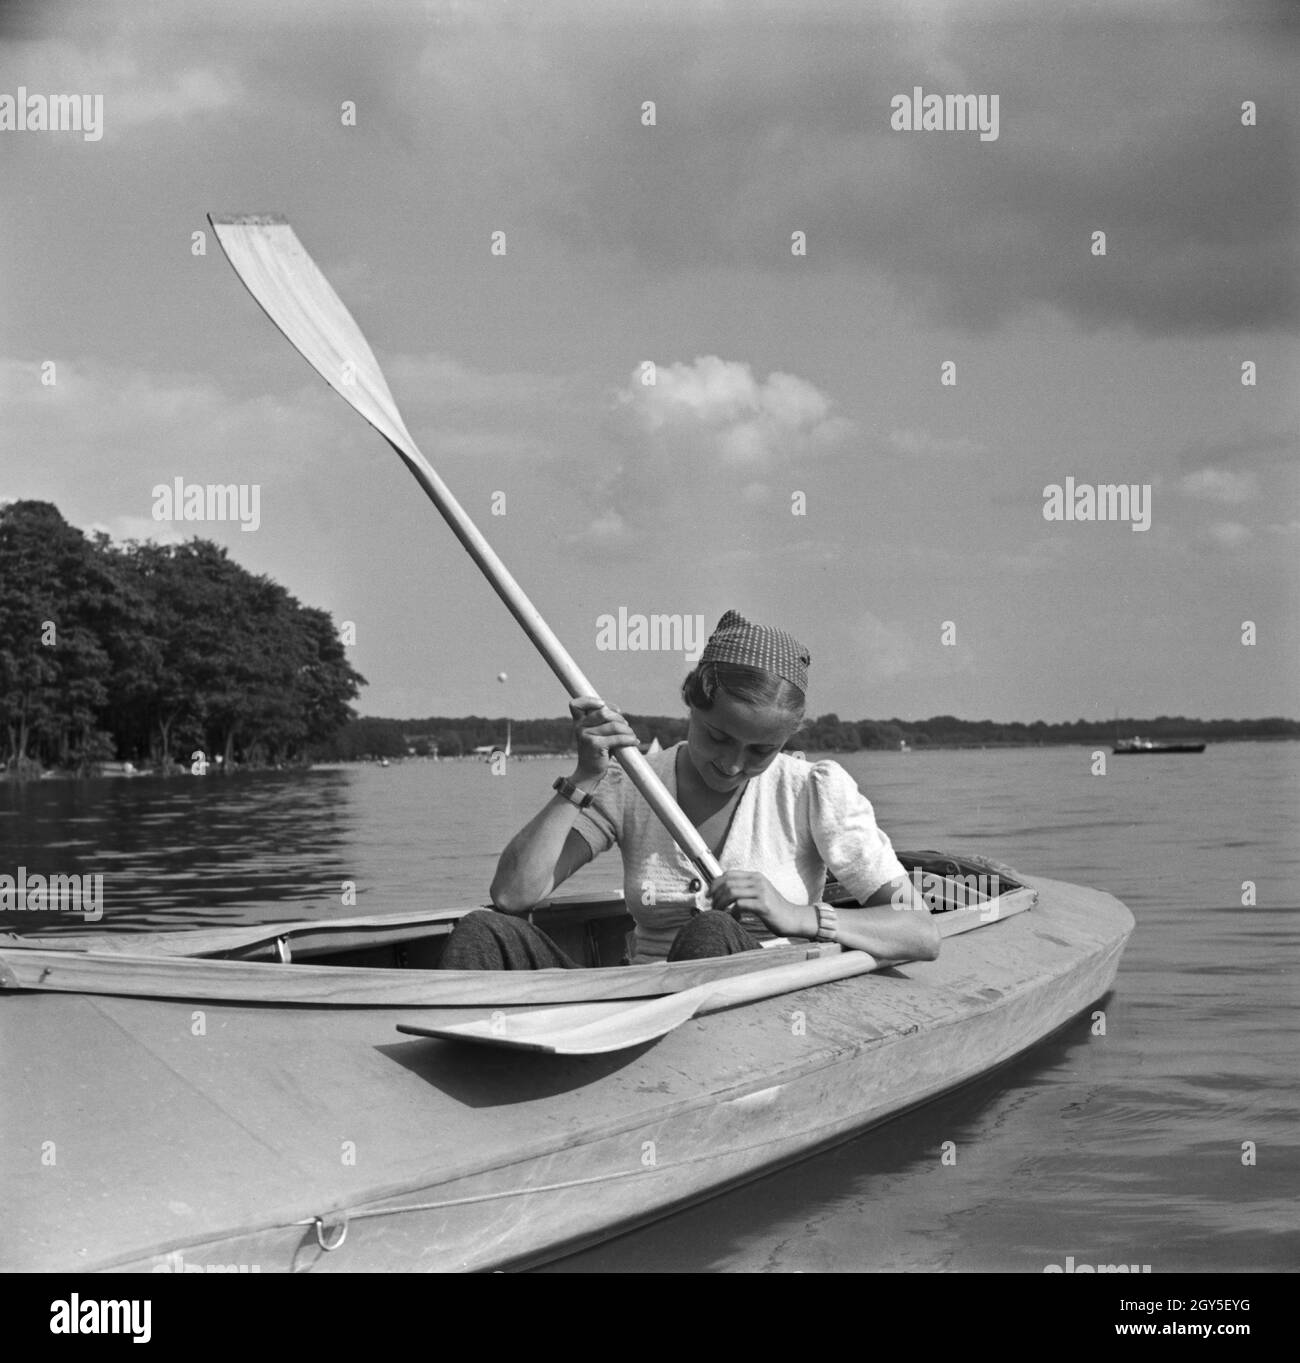 Ein Ausflug mit dem Klepper-Boot, Deutsches Reich 1930er Jahre. An excursion with a foldboat, Germany 1930s. Stock Photo